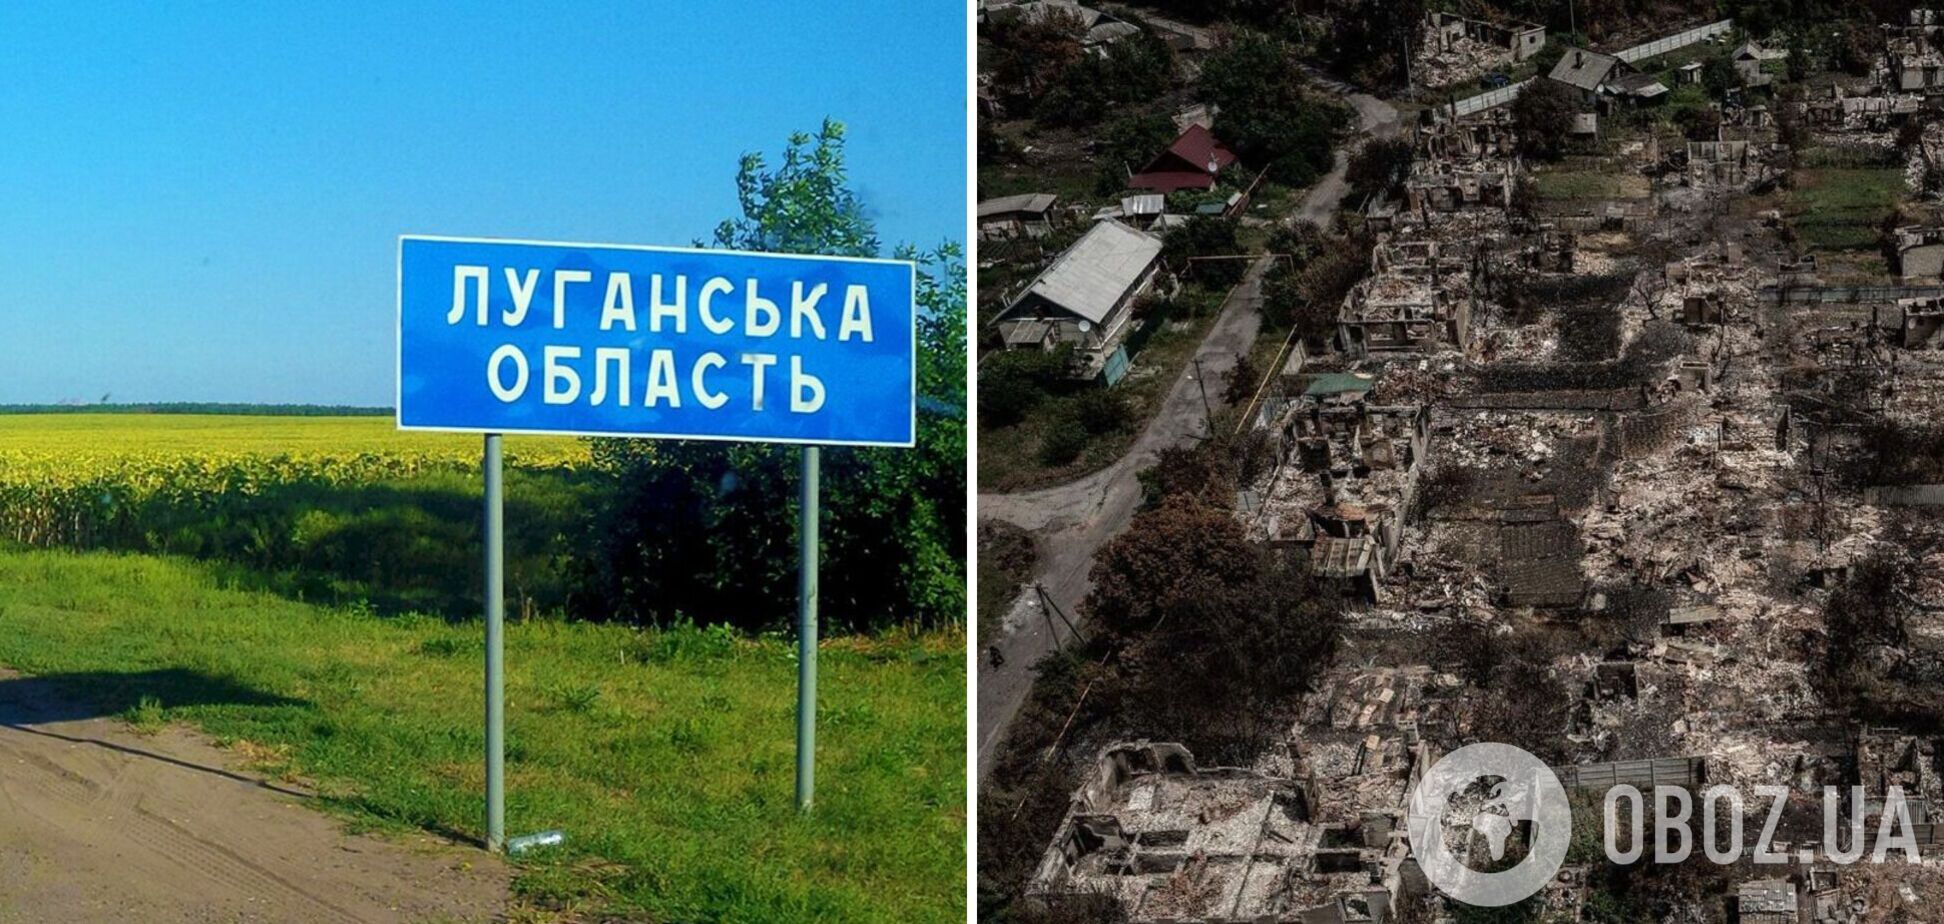 Так виглядає російська тактика 'випаленої землі': з'явилися фото 'звільненого' Привілля на Луганщині